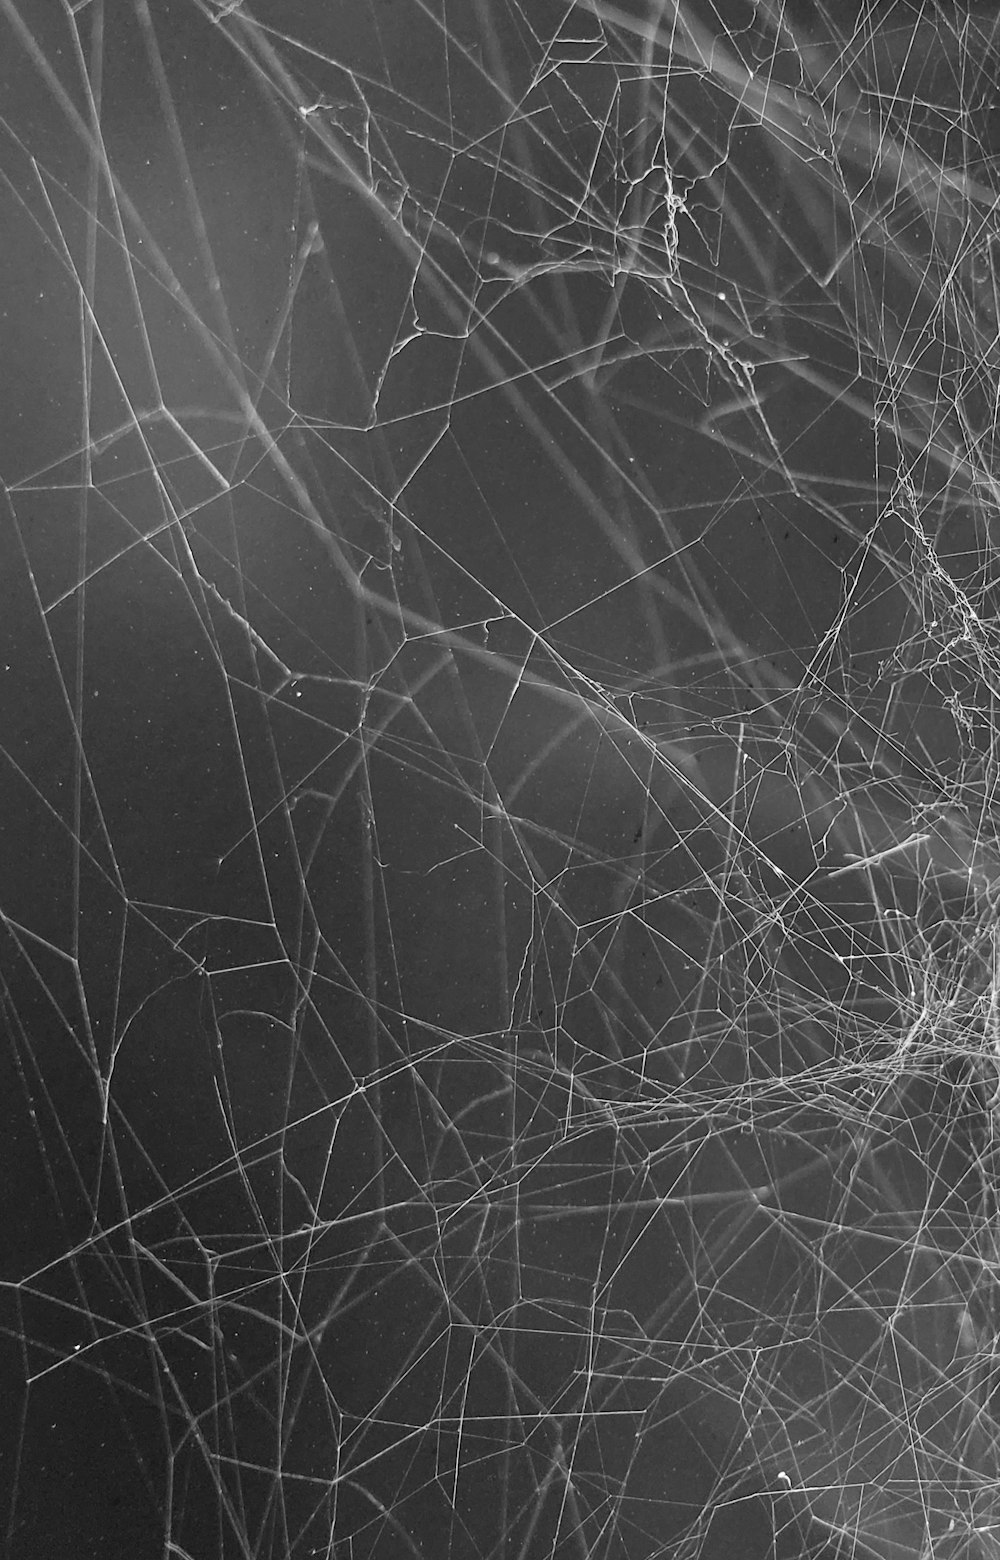 Foto en escala de grises de una tela de araña